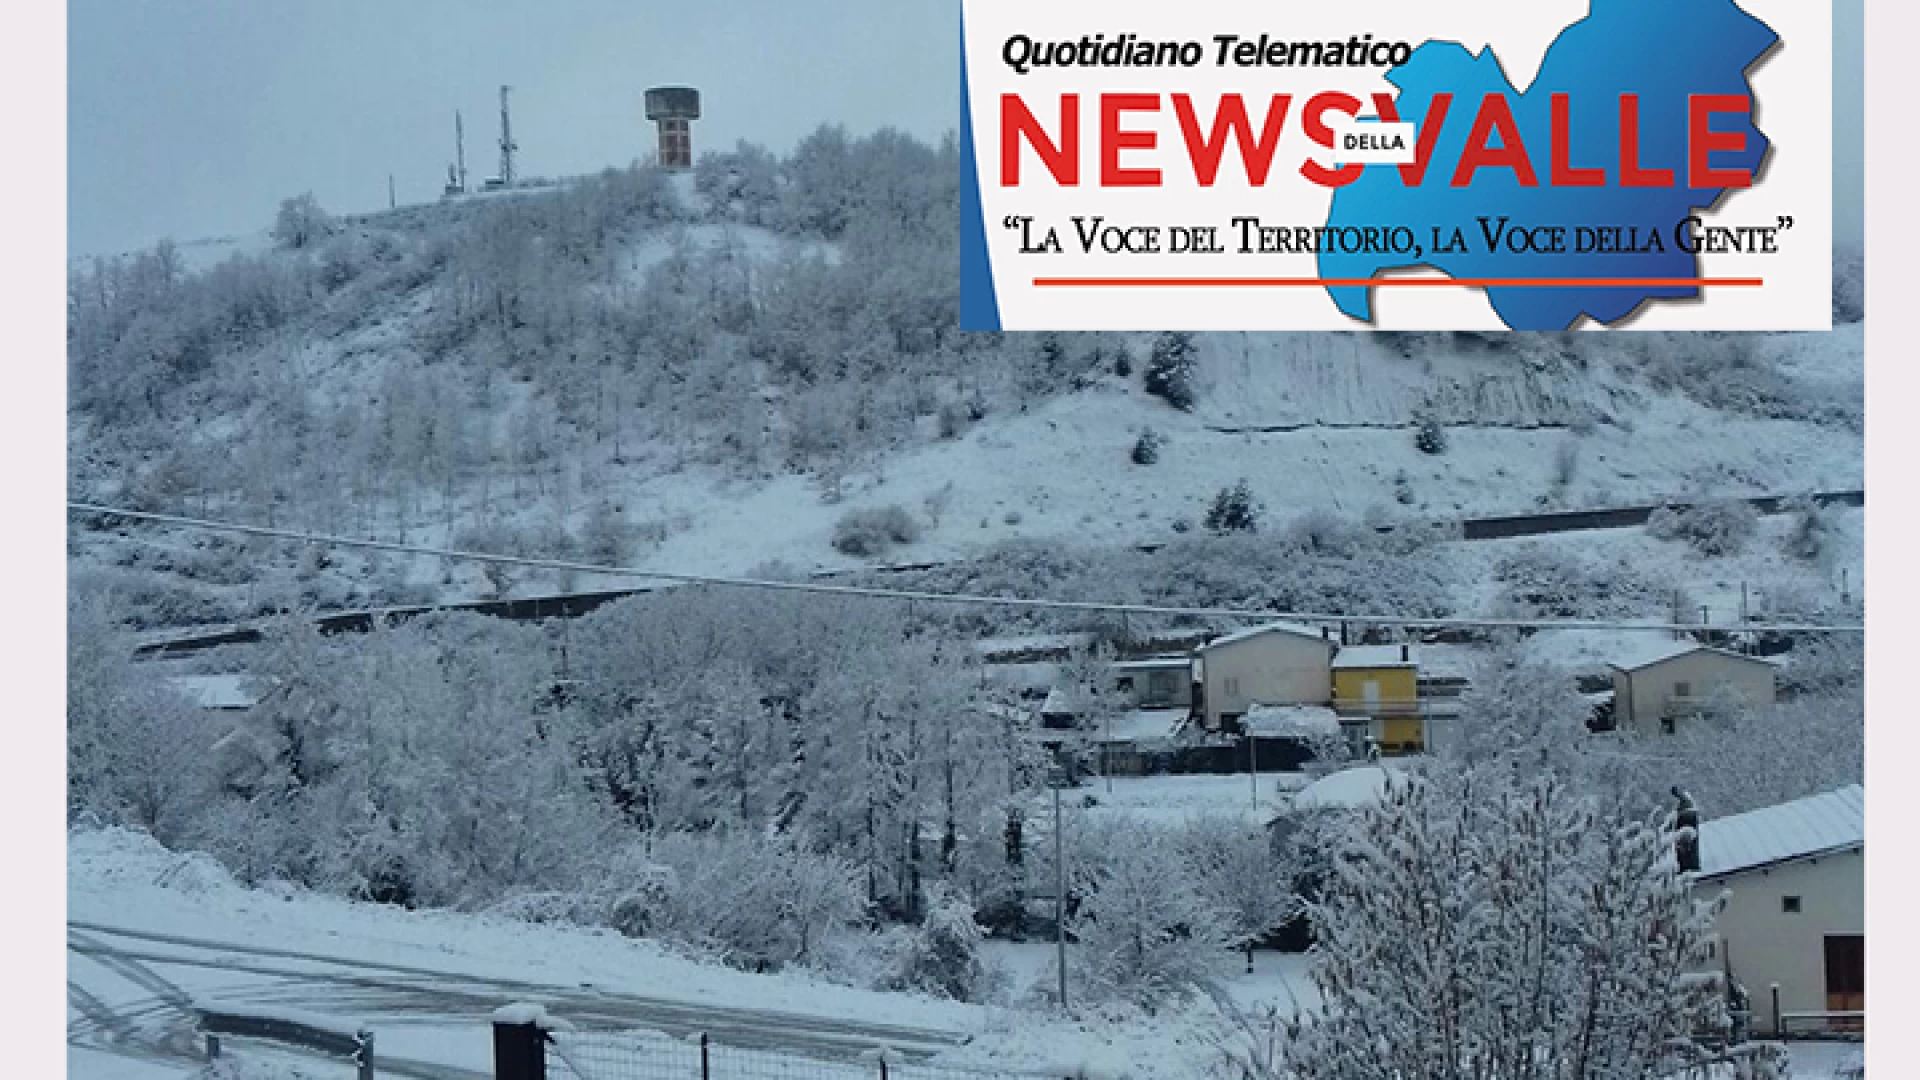 Emergenza neve e gelo, lunedì si fermano le lezioni in diversi centri del Molise. Chiusure a Campobasso e Cerro al Volturno.